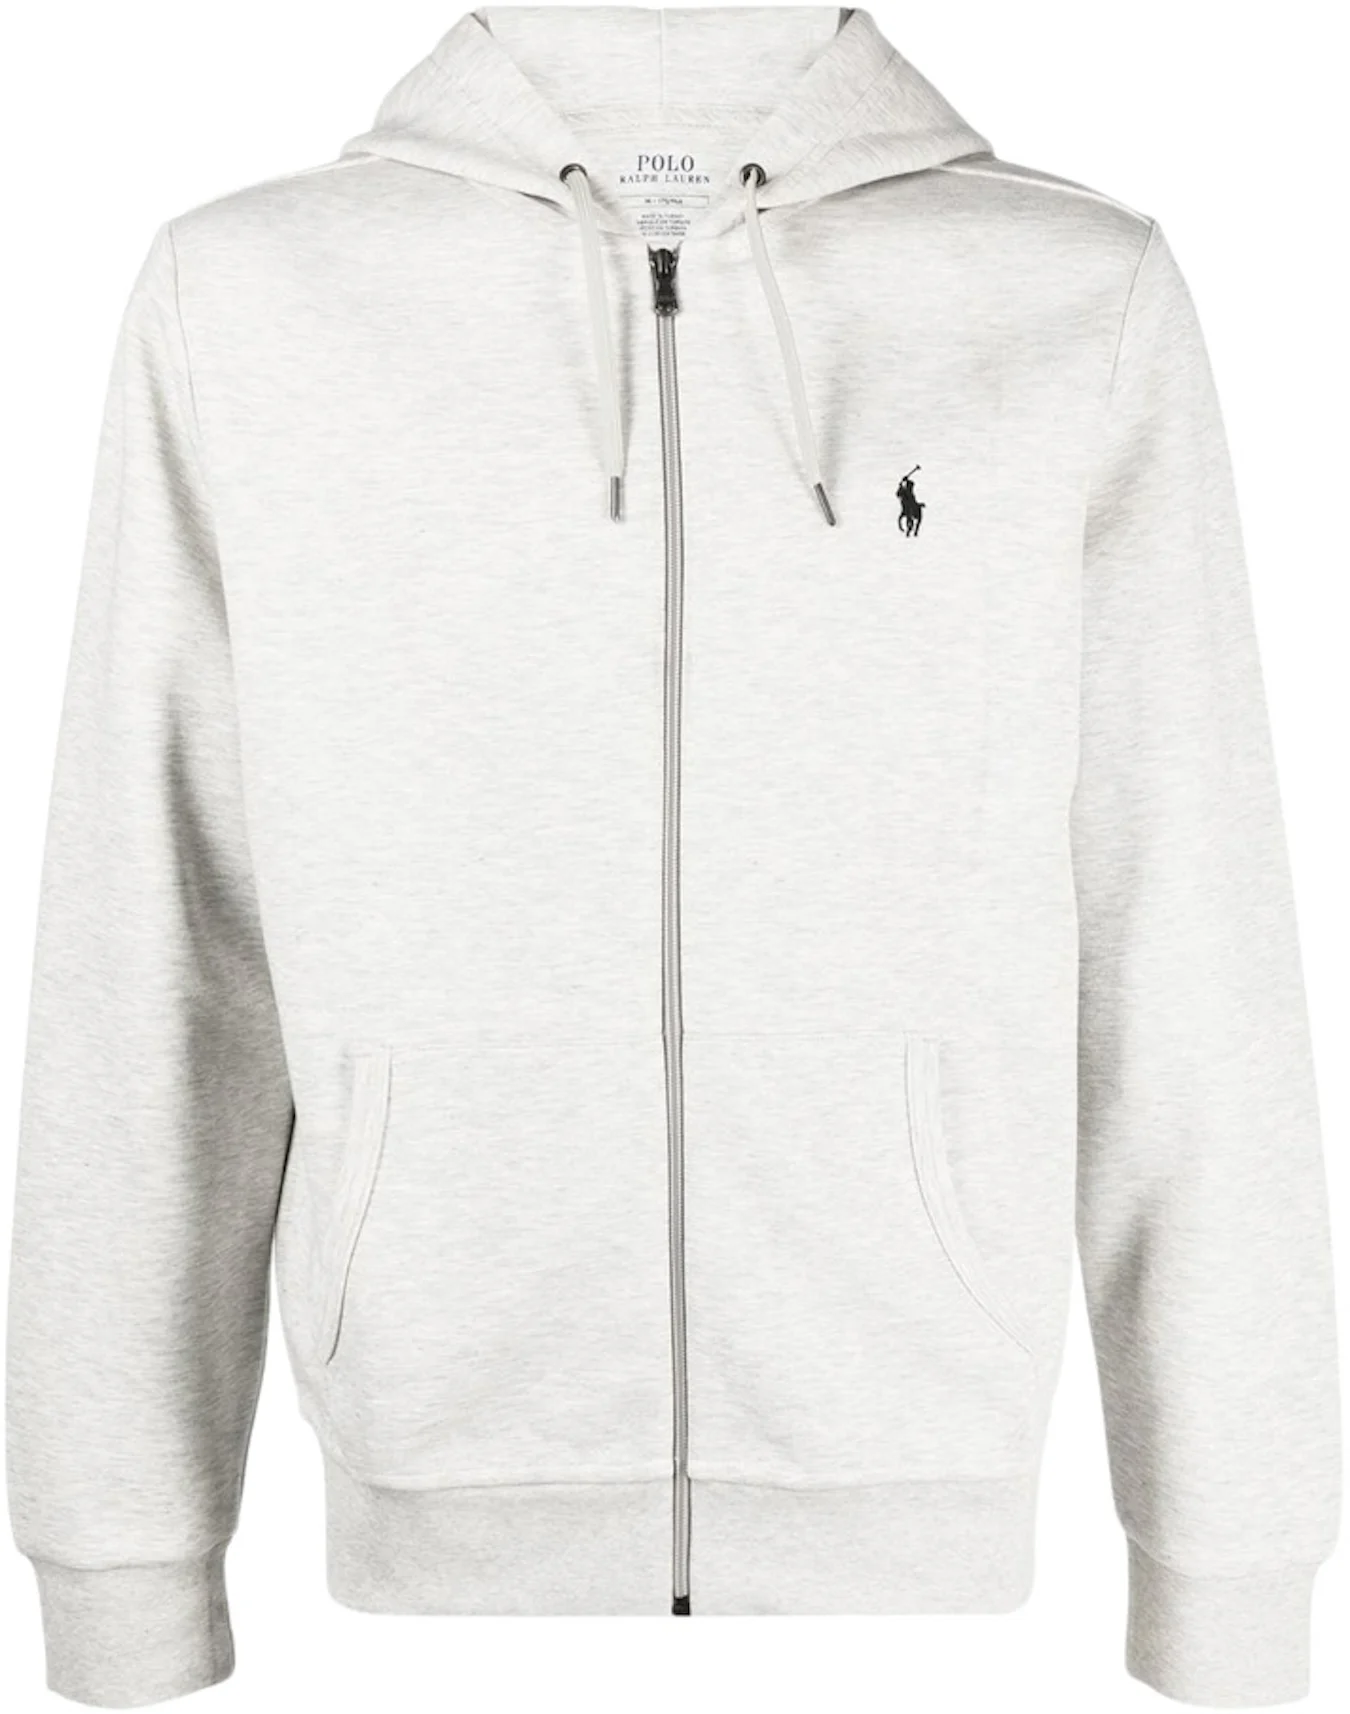 Sports sweatshirt with zip and hood brand POLO RALPH LAUREN —  /en